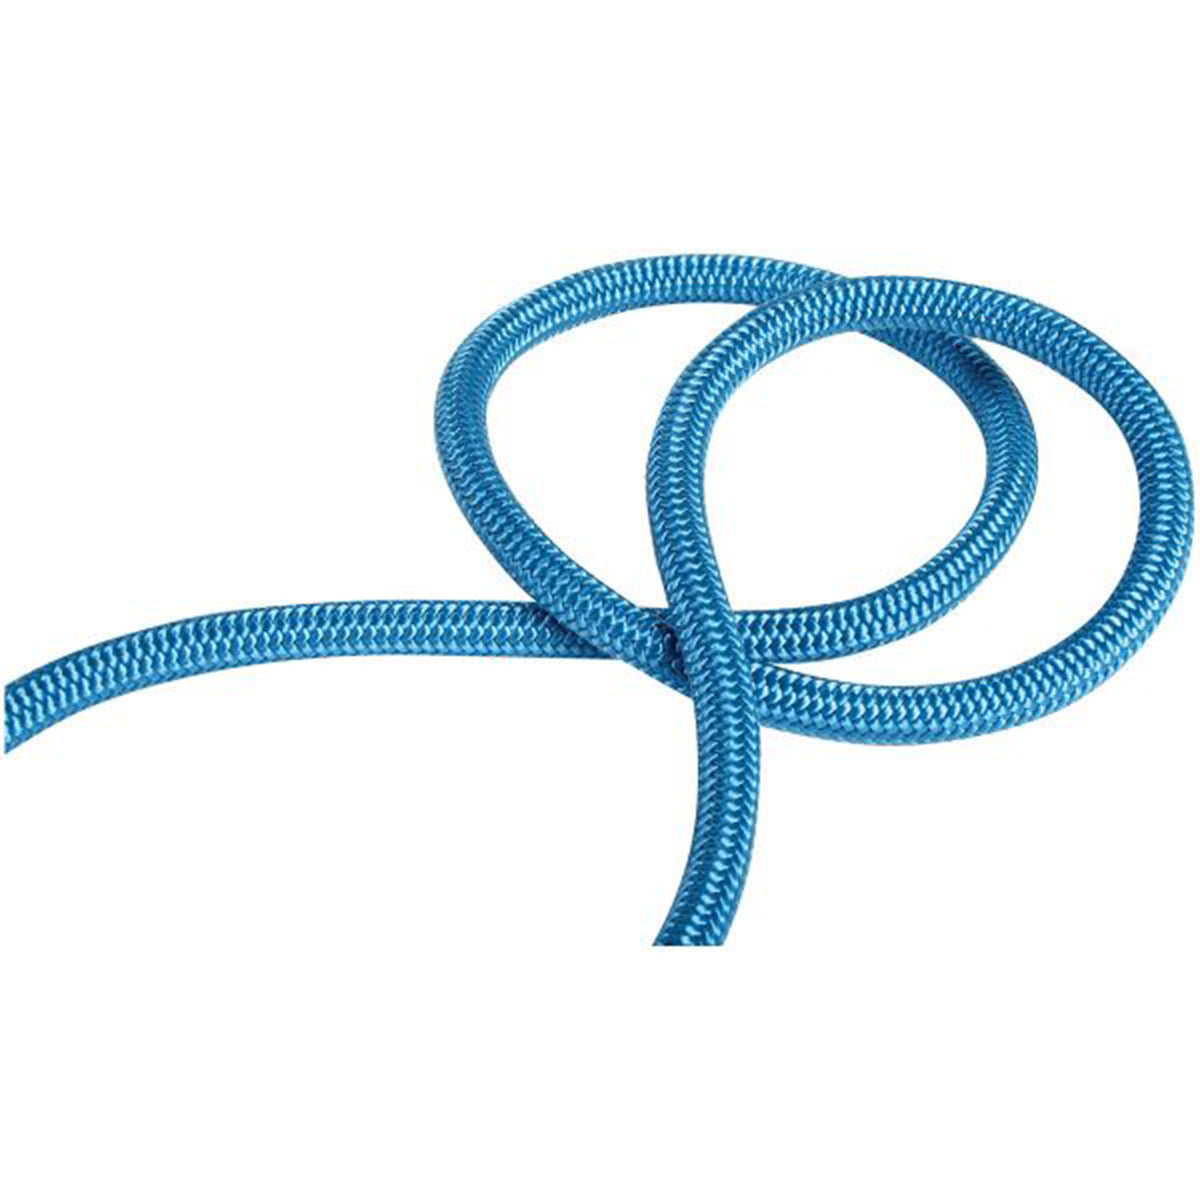 7mm nylon accessory cord, blue